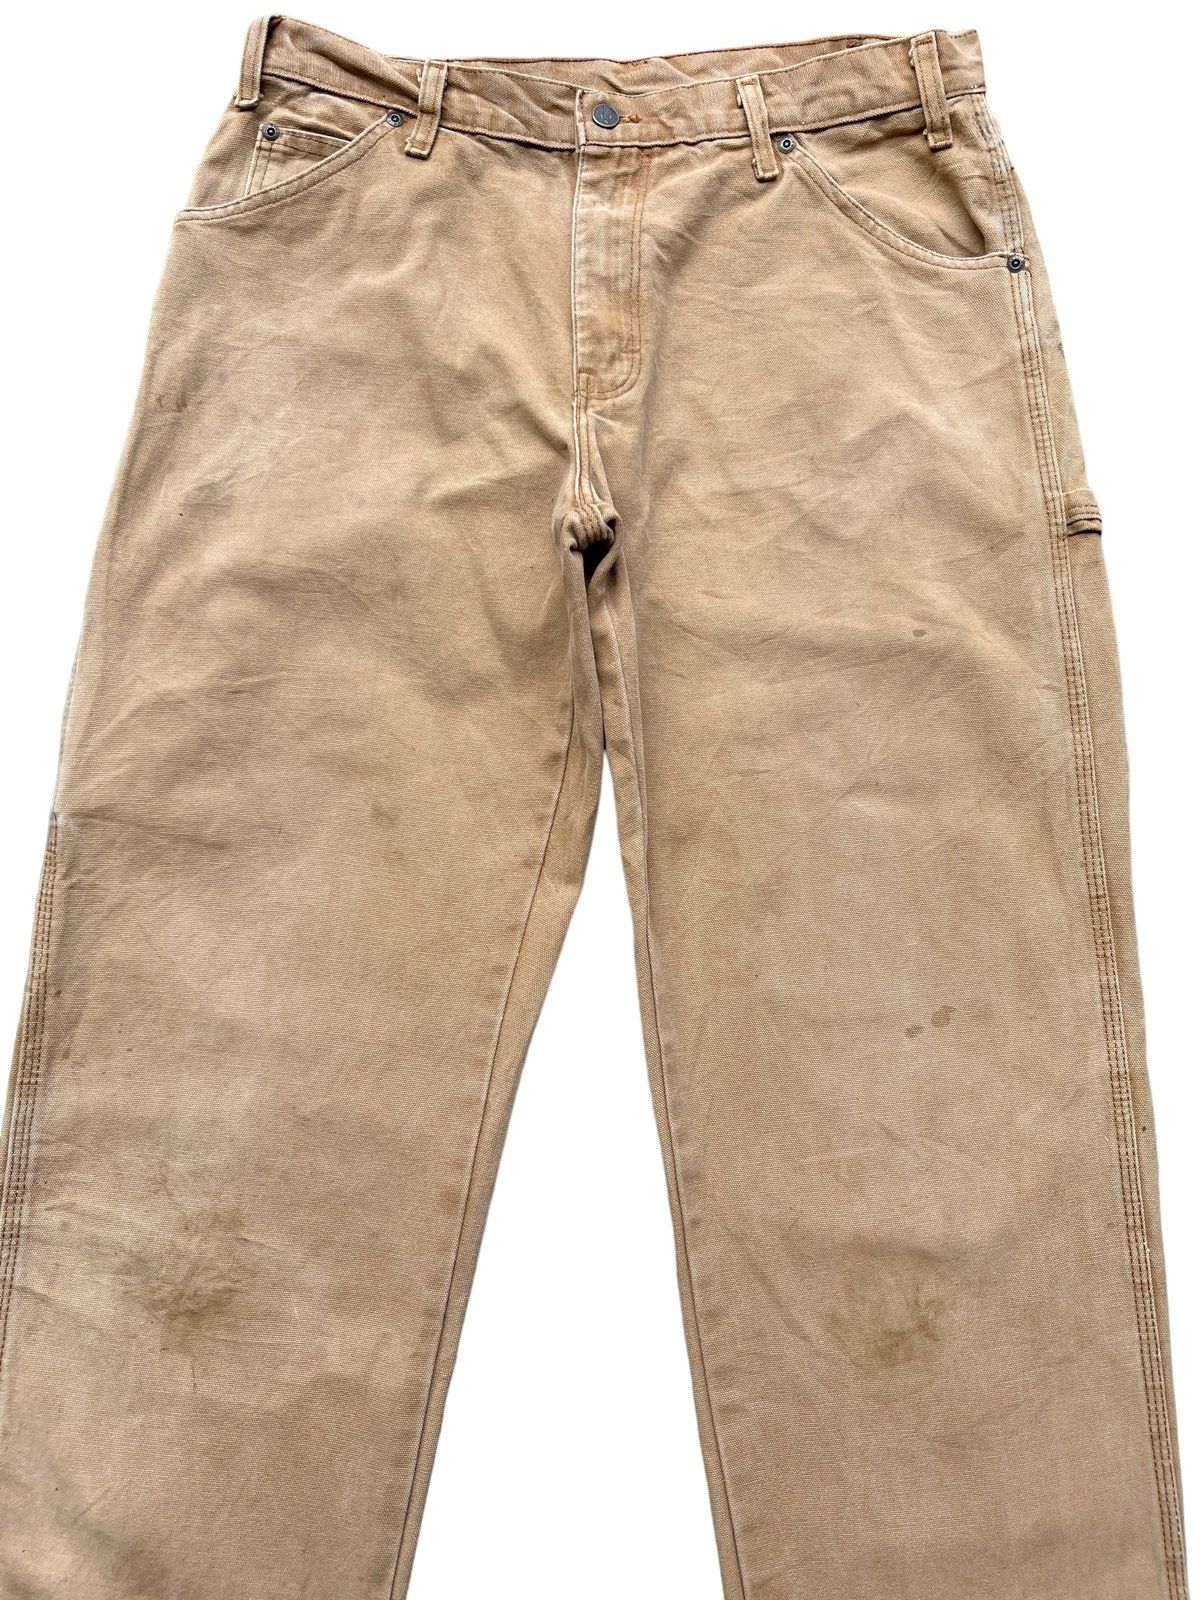 Vintage 90s Dickies Workwear Faded Distressed Baggy Pants - 4